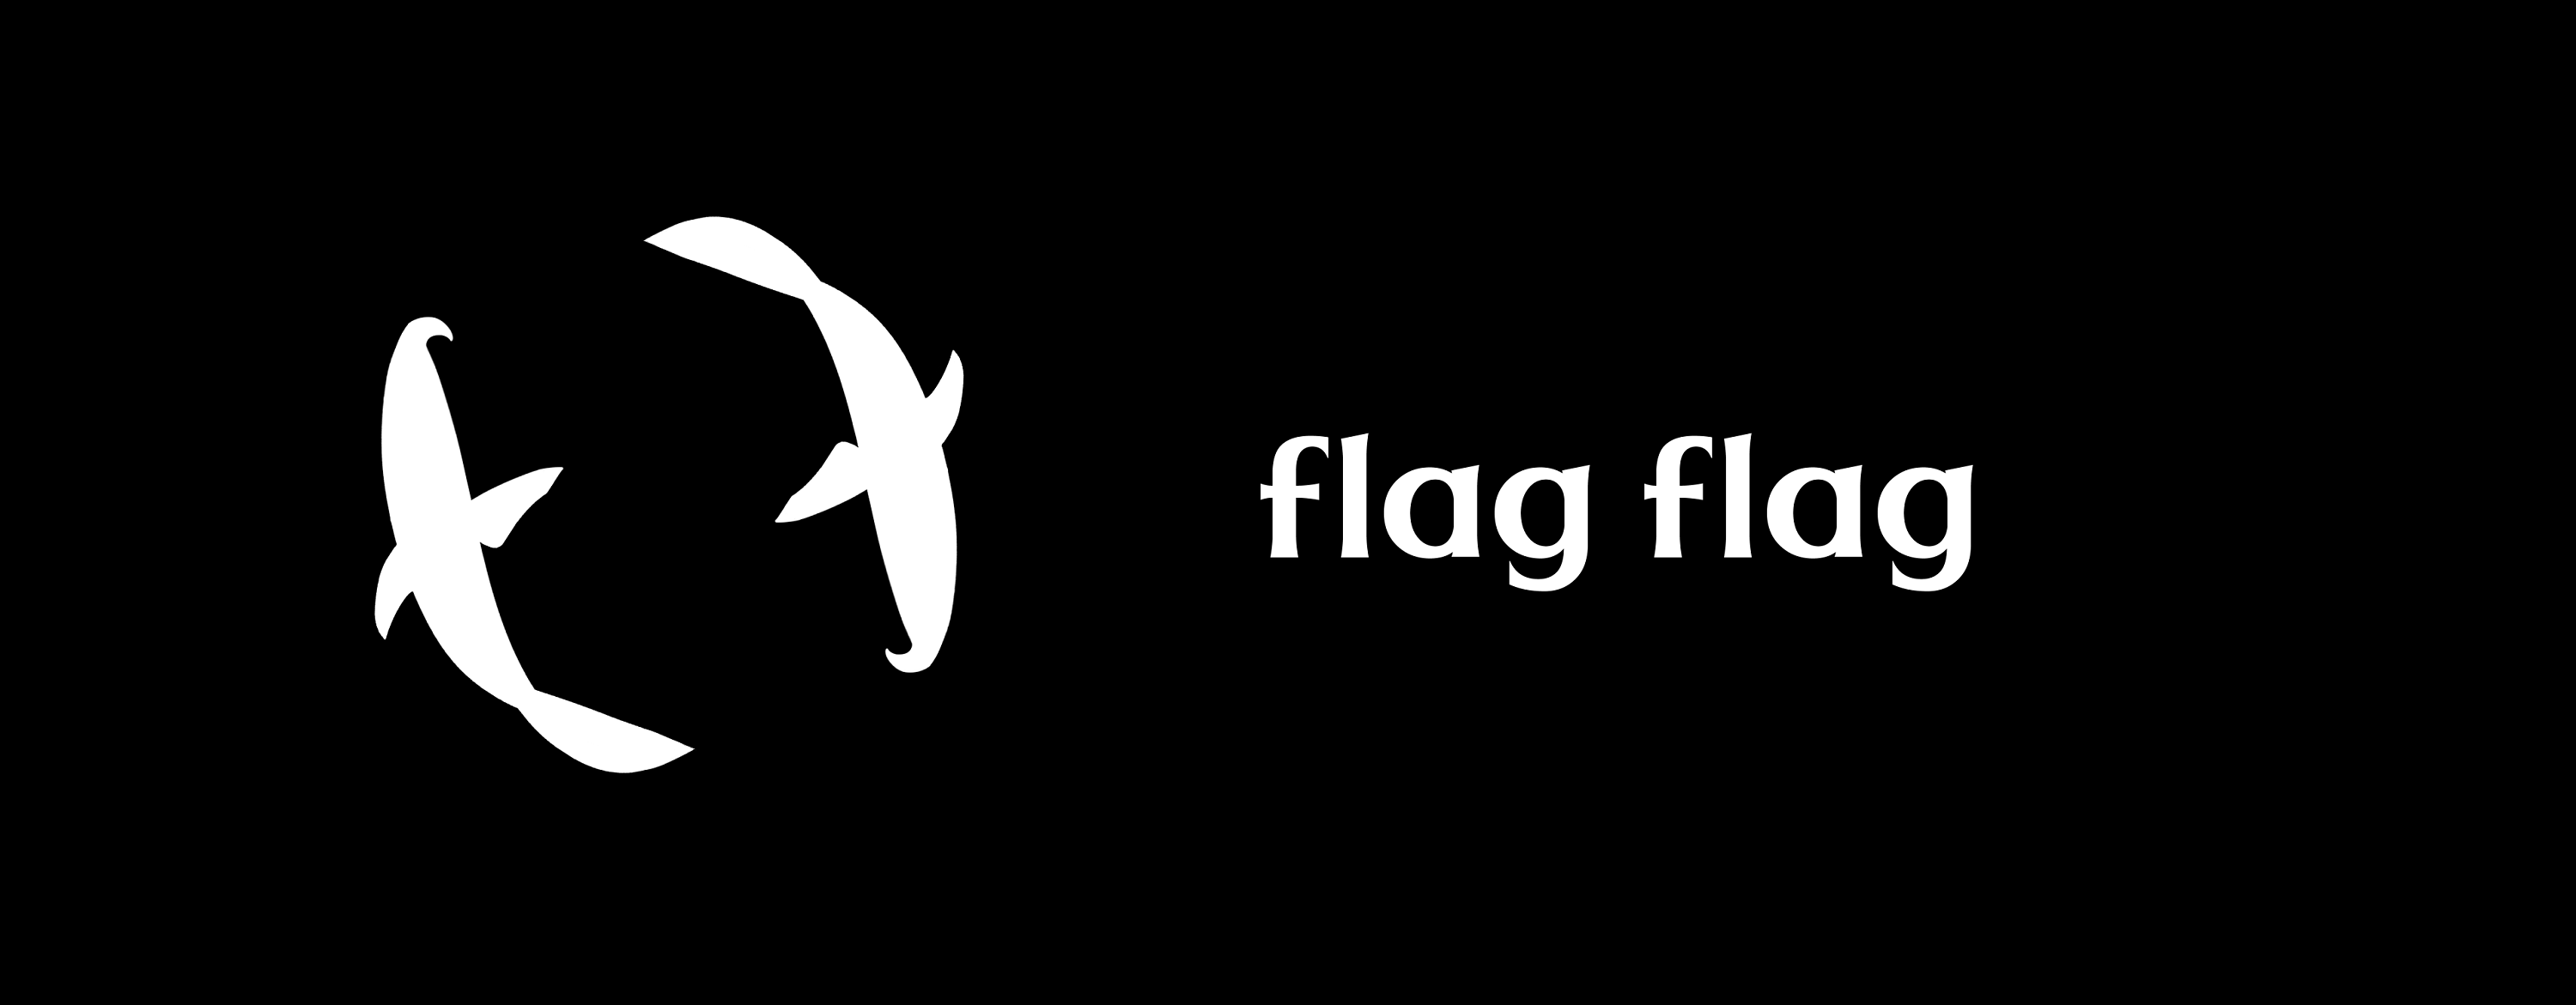 flag-flag